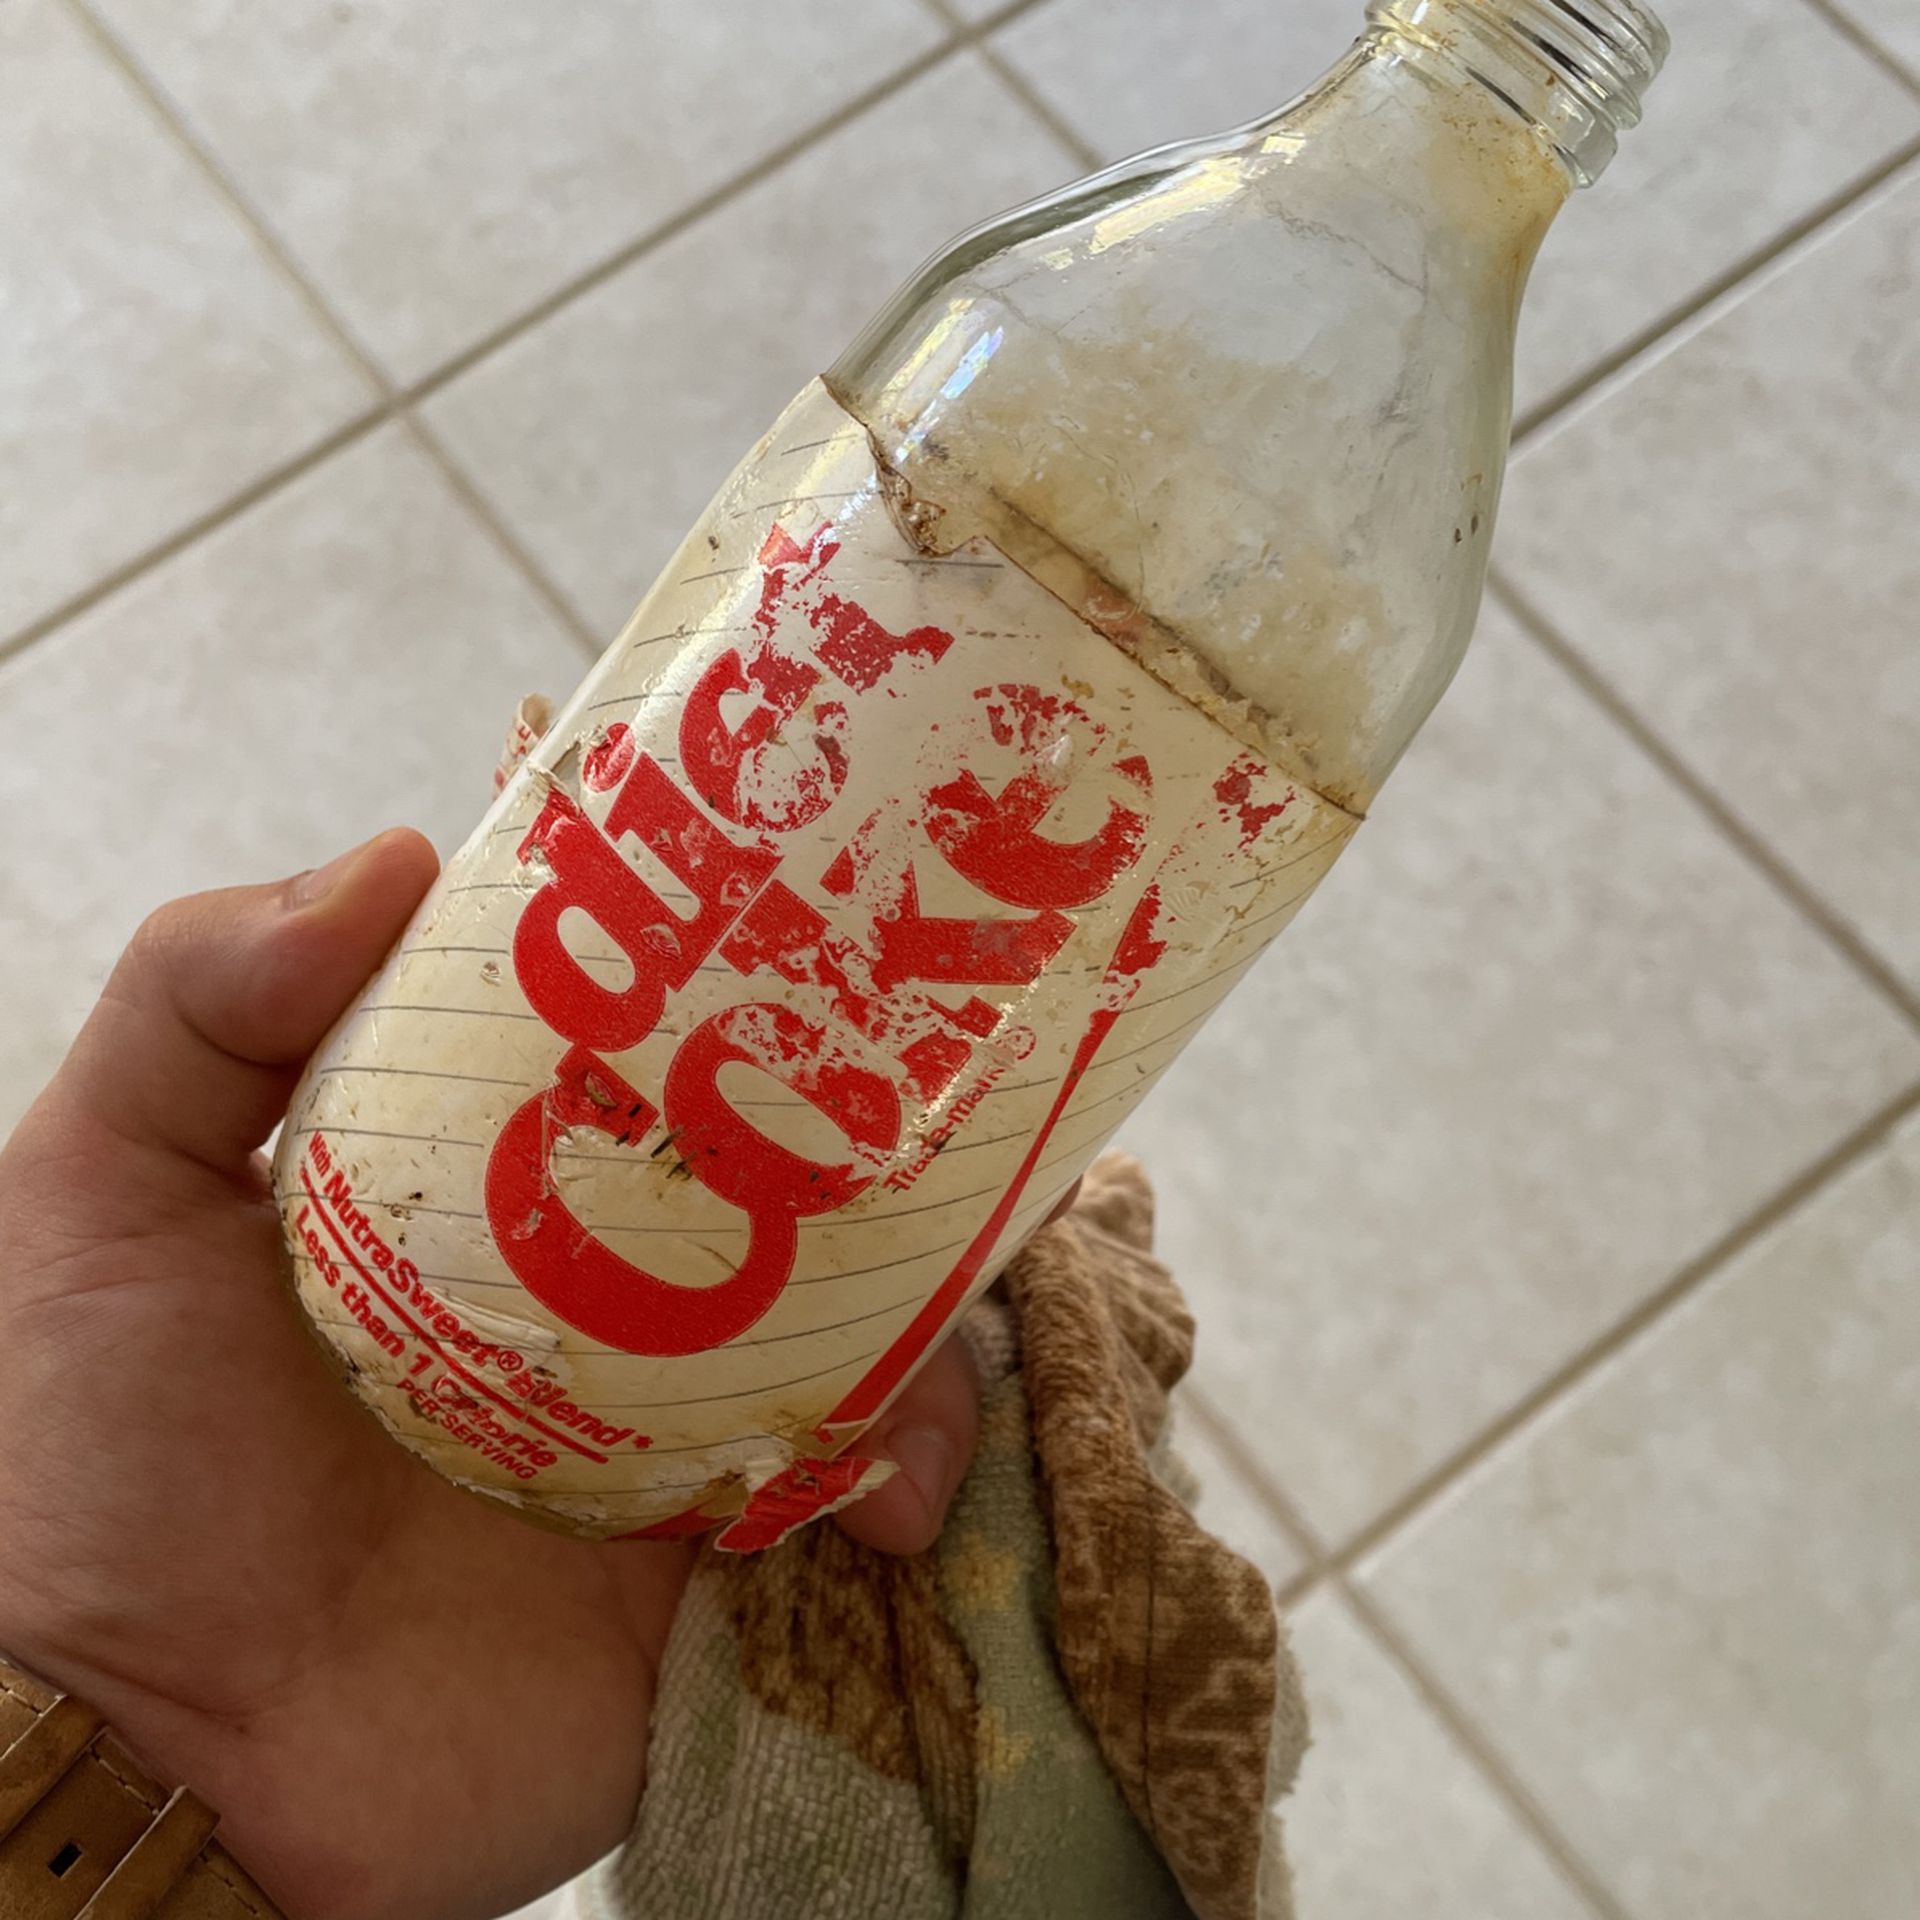 Old glass Diet Coke bottle from ‘85